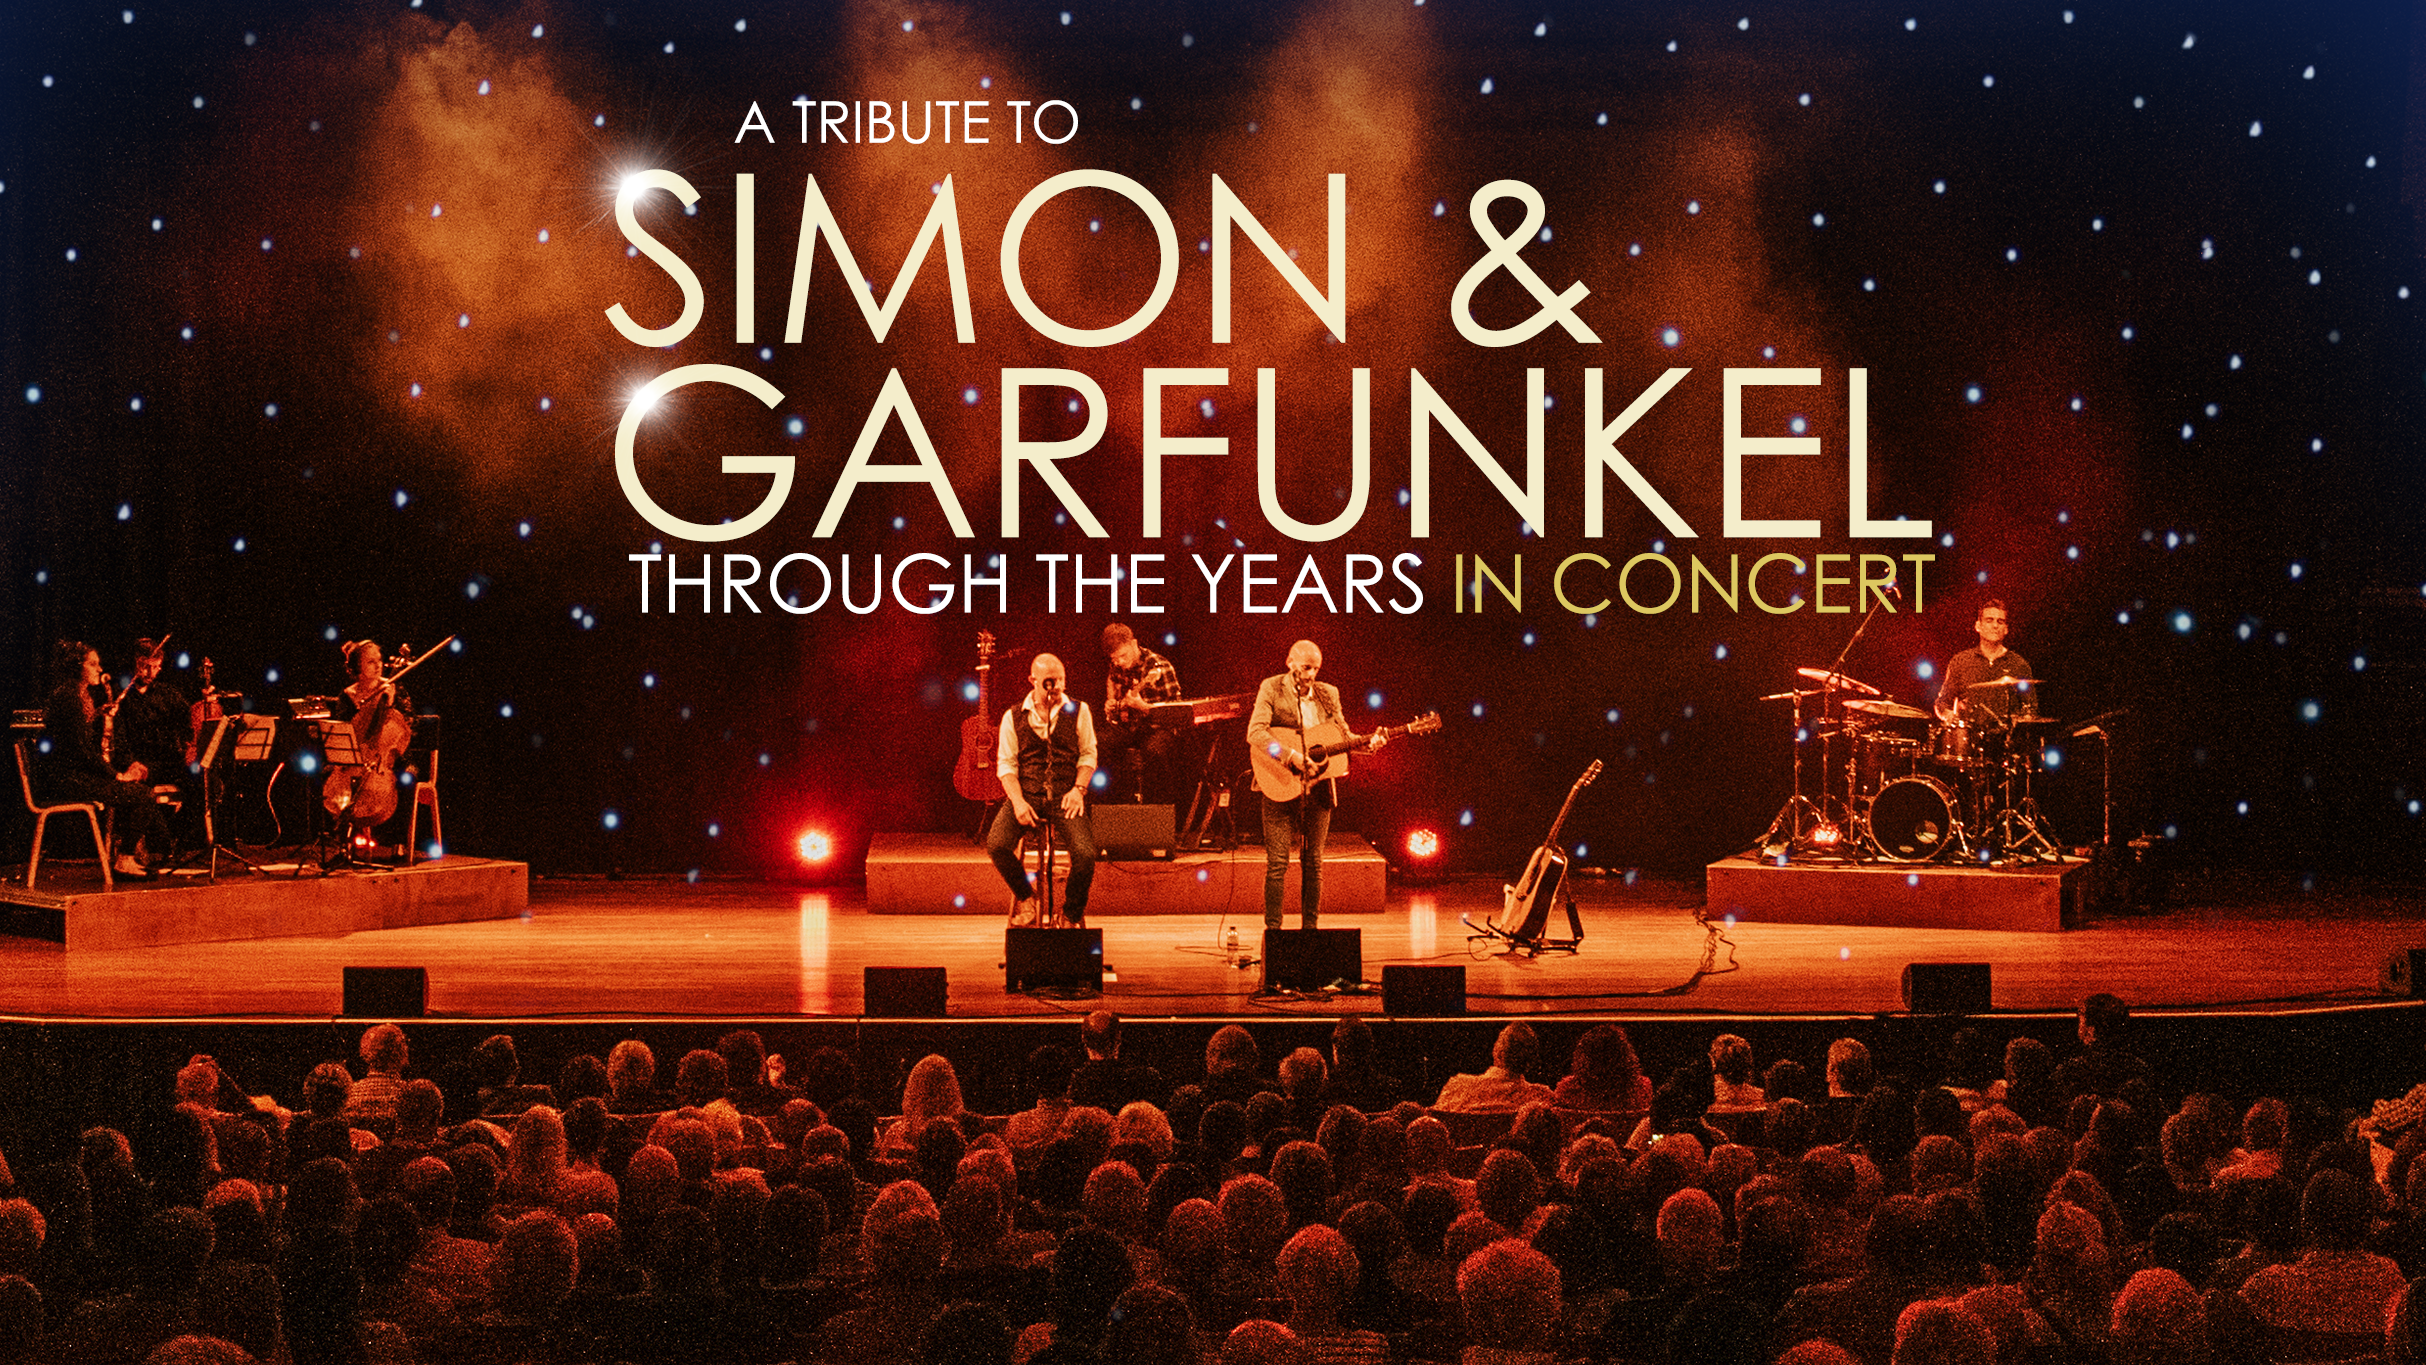 Simon & Garfunkel Through the Years